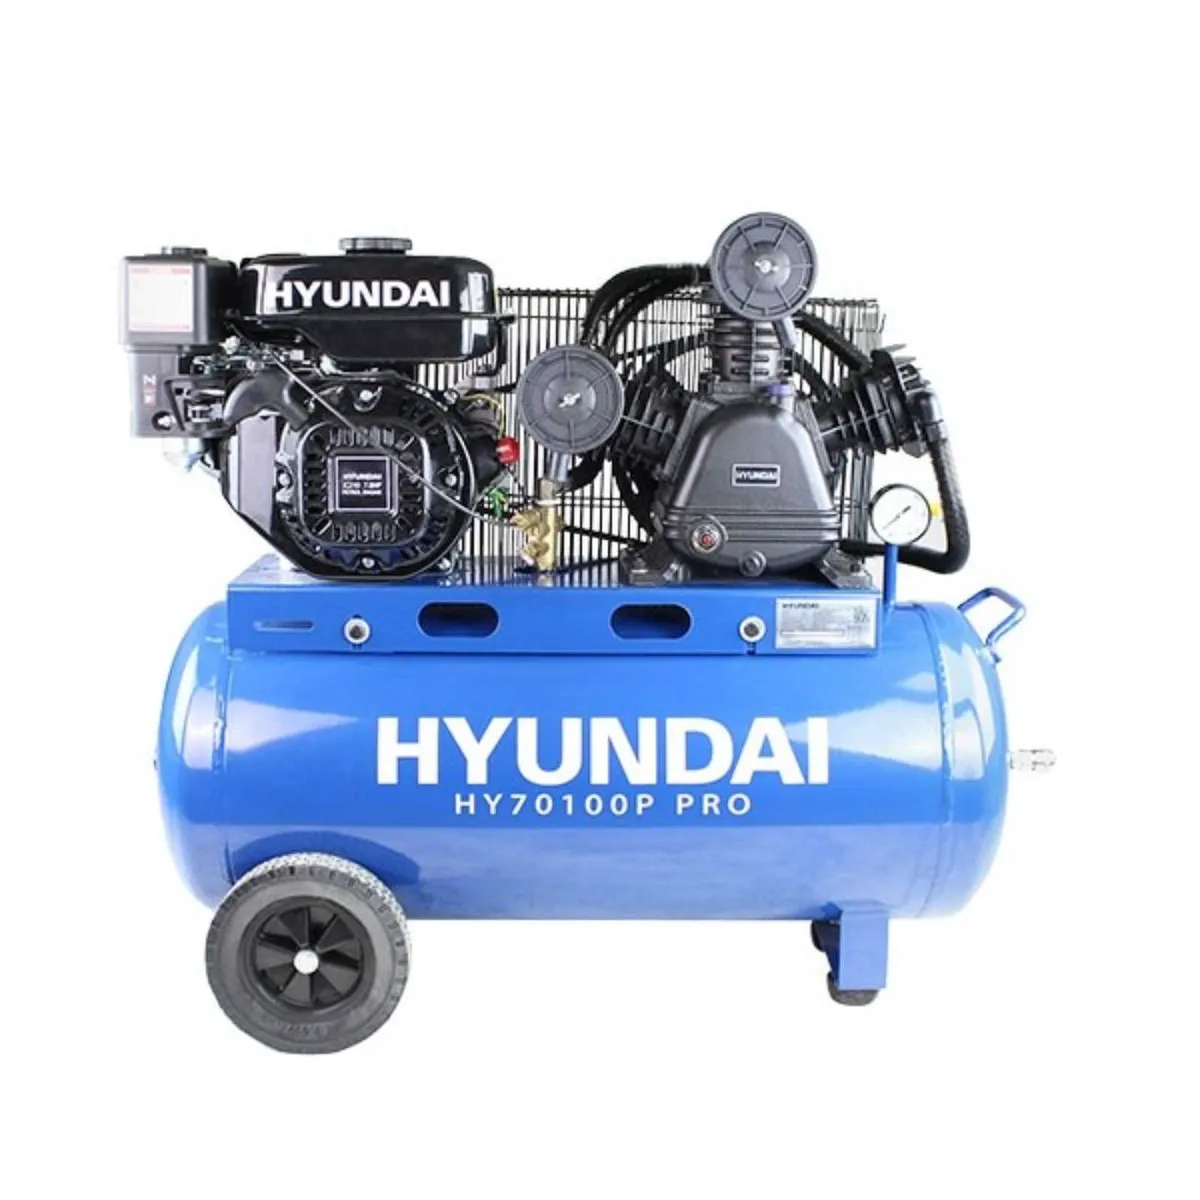 Hyundai 90 Litre Air Compressor, 10.7CFM/145psi, - Image 1